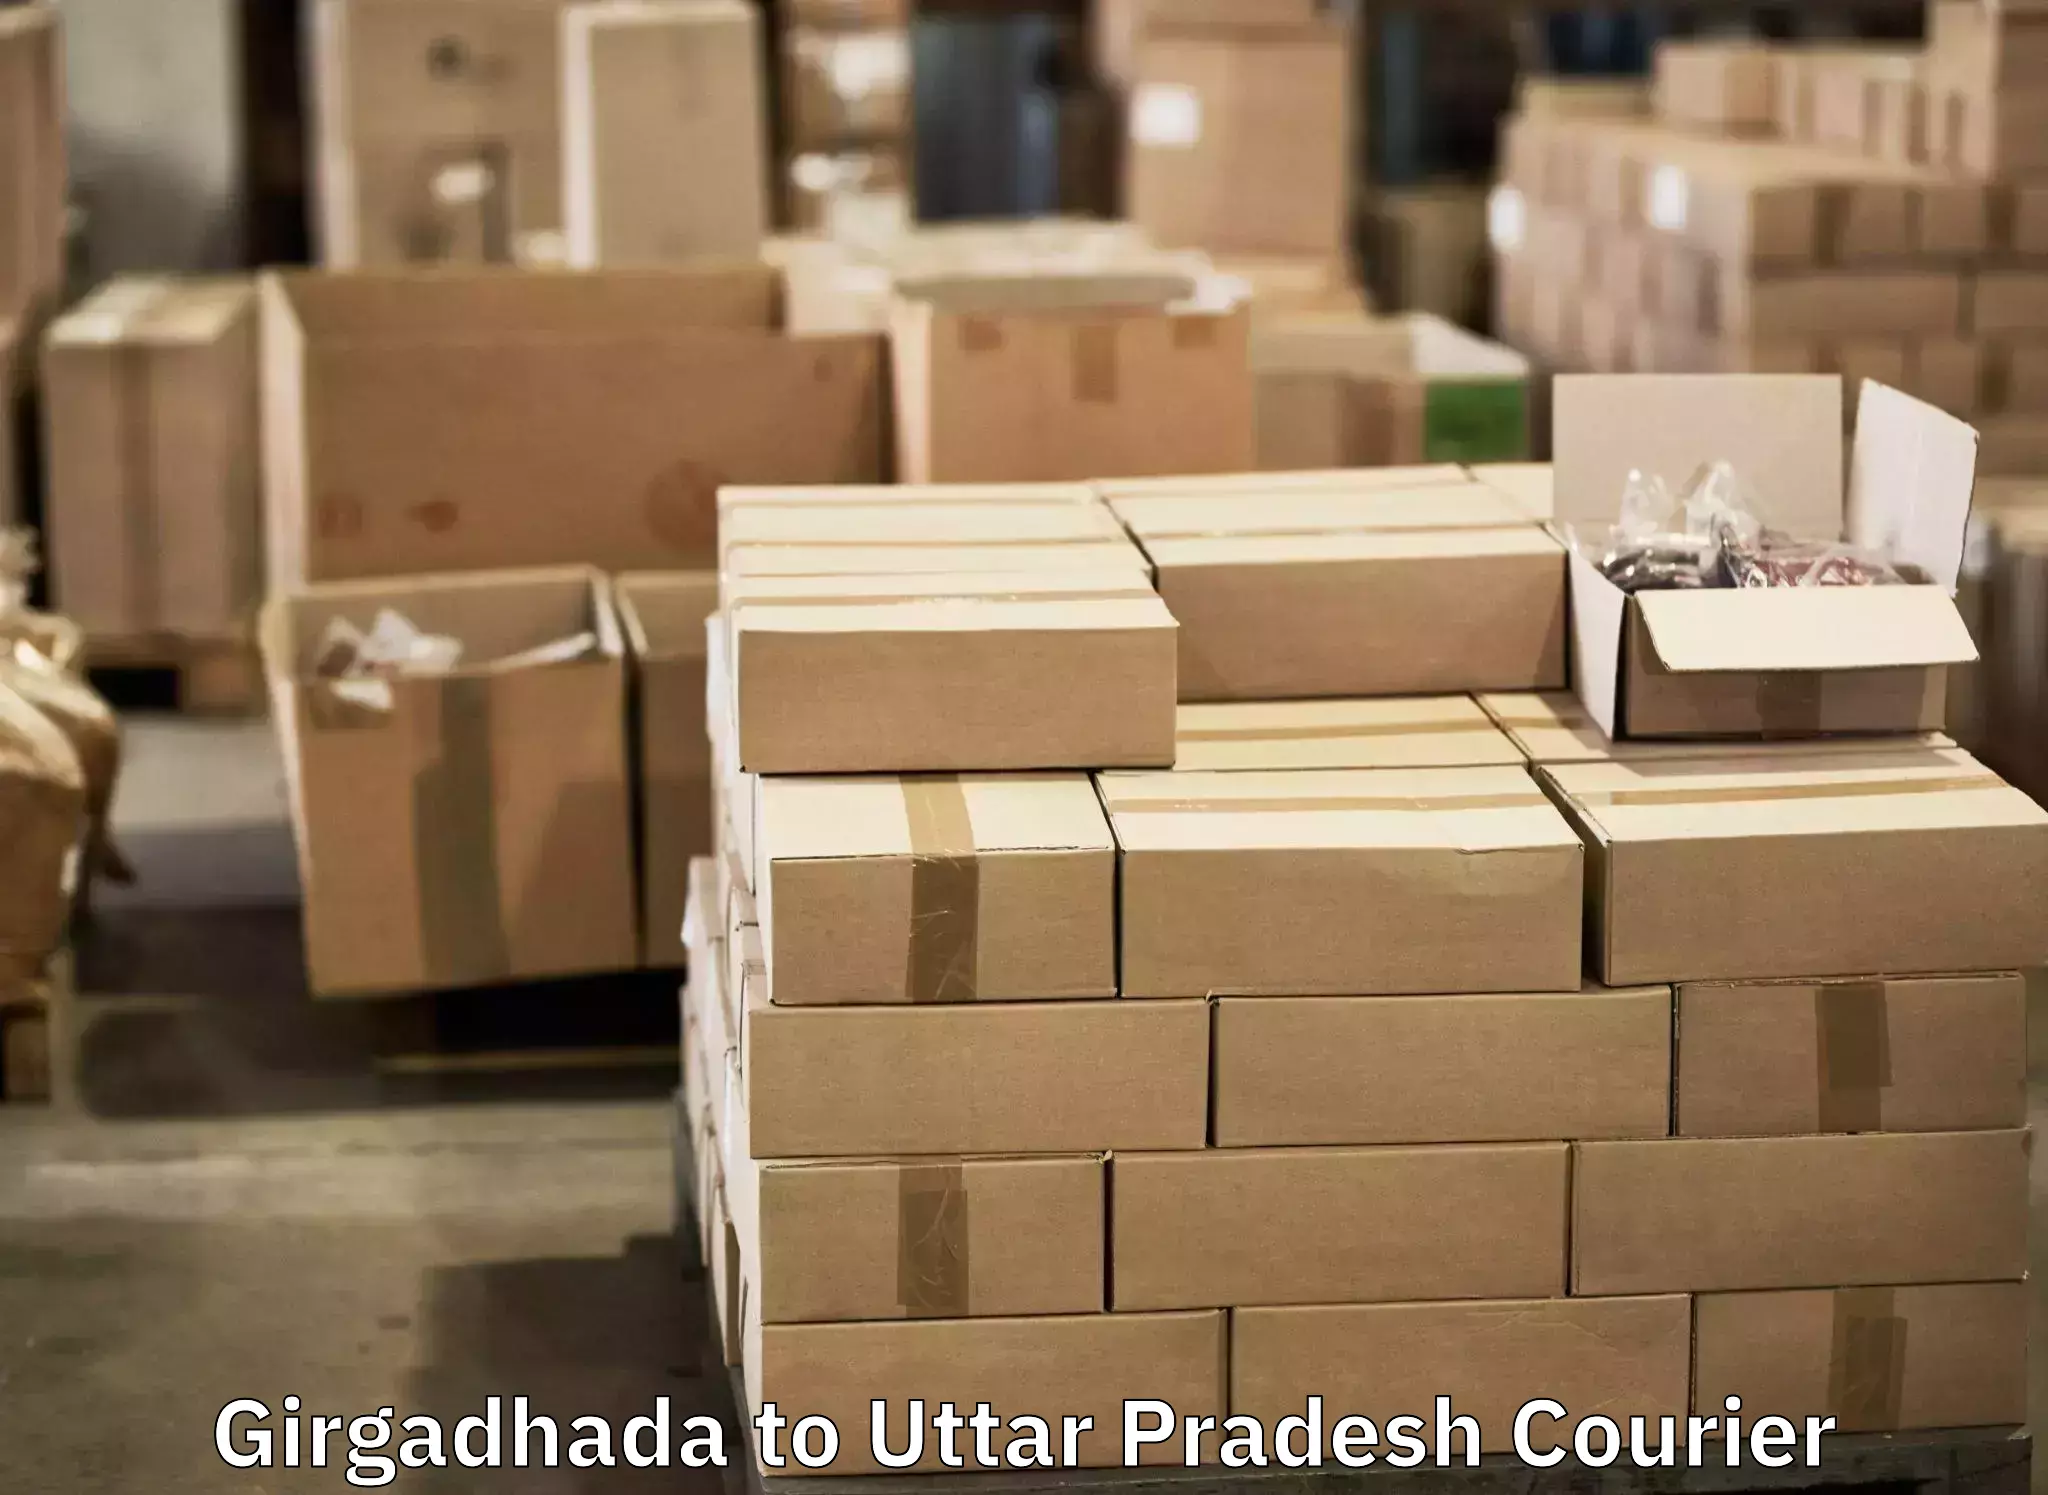 Holiday season luggage delivery Girgadhada to Sahaswan